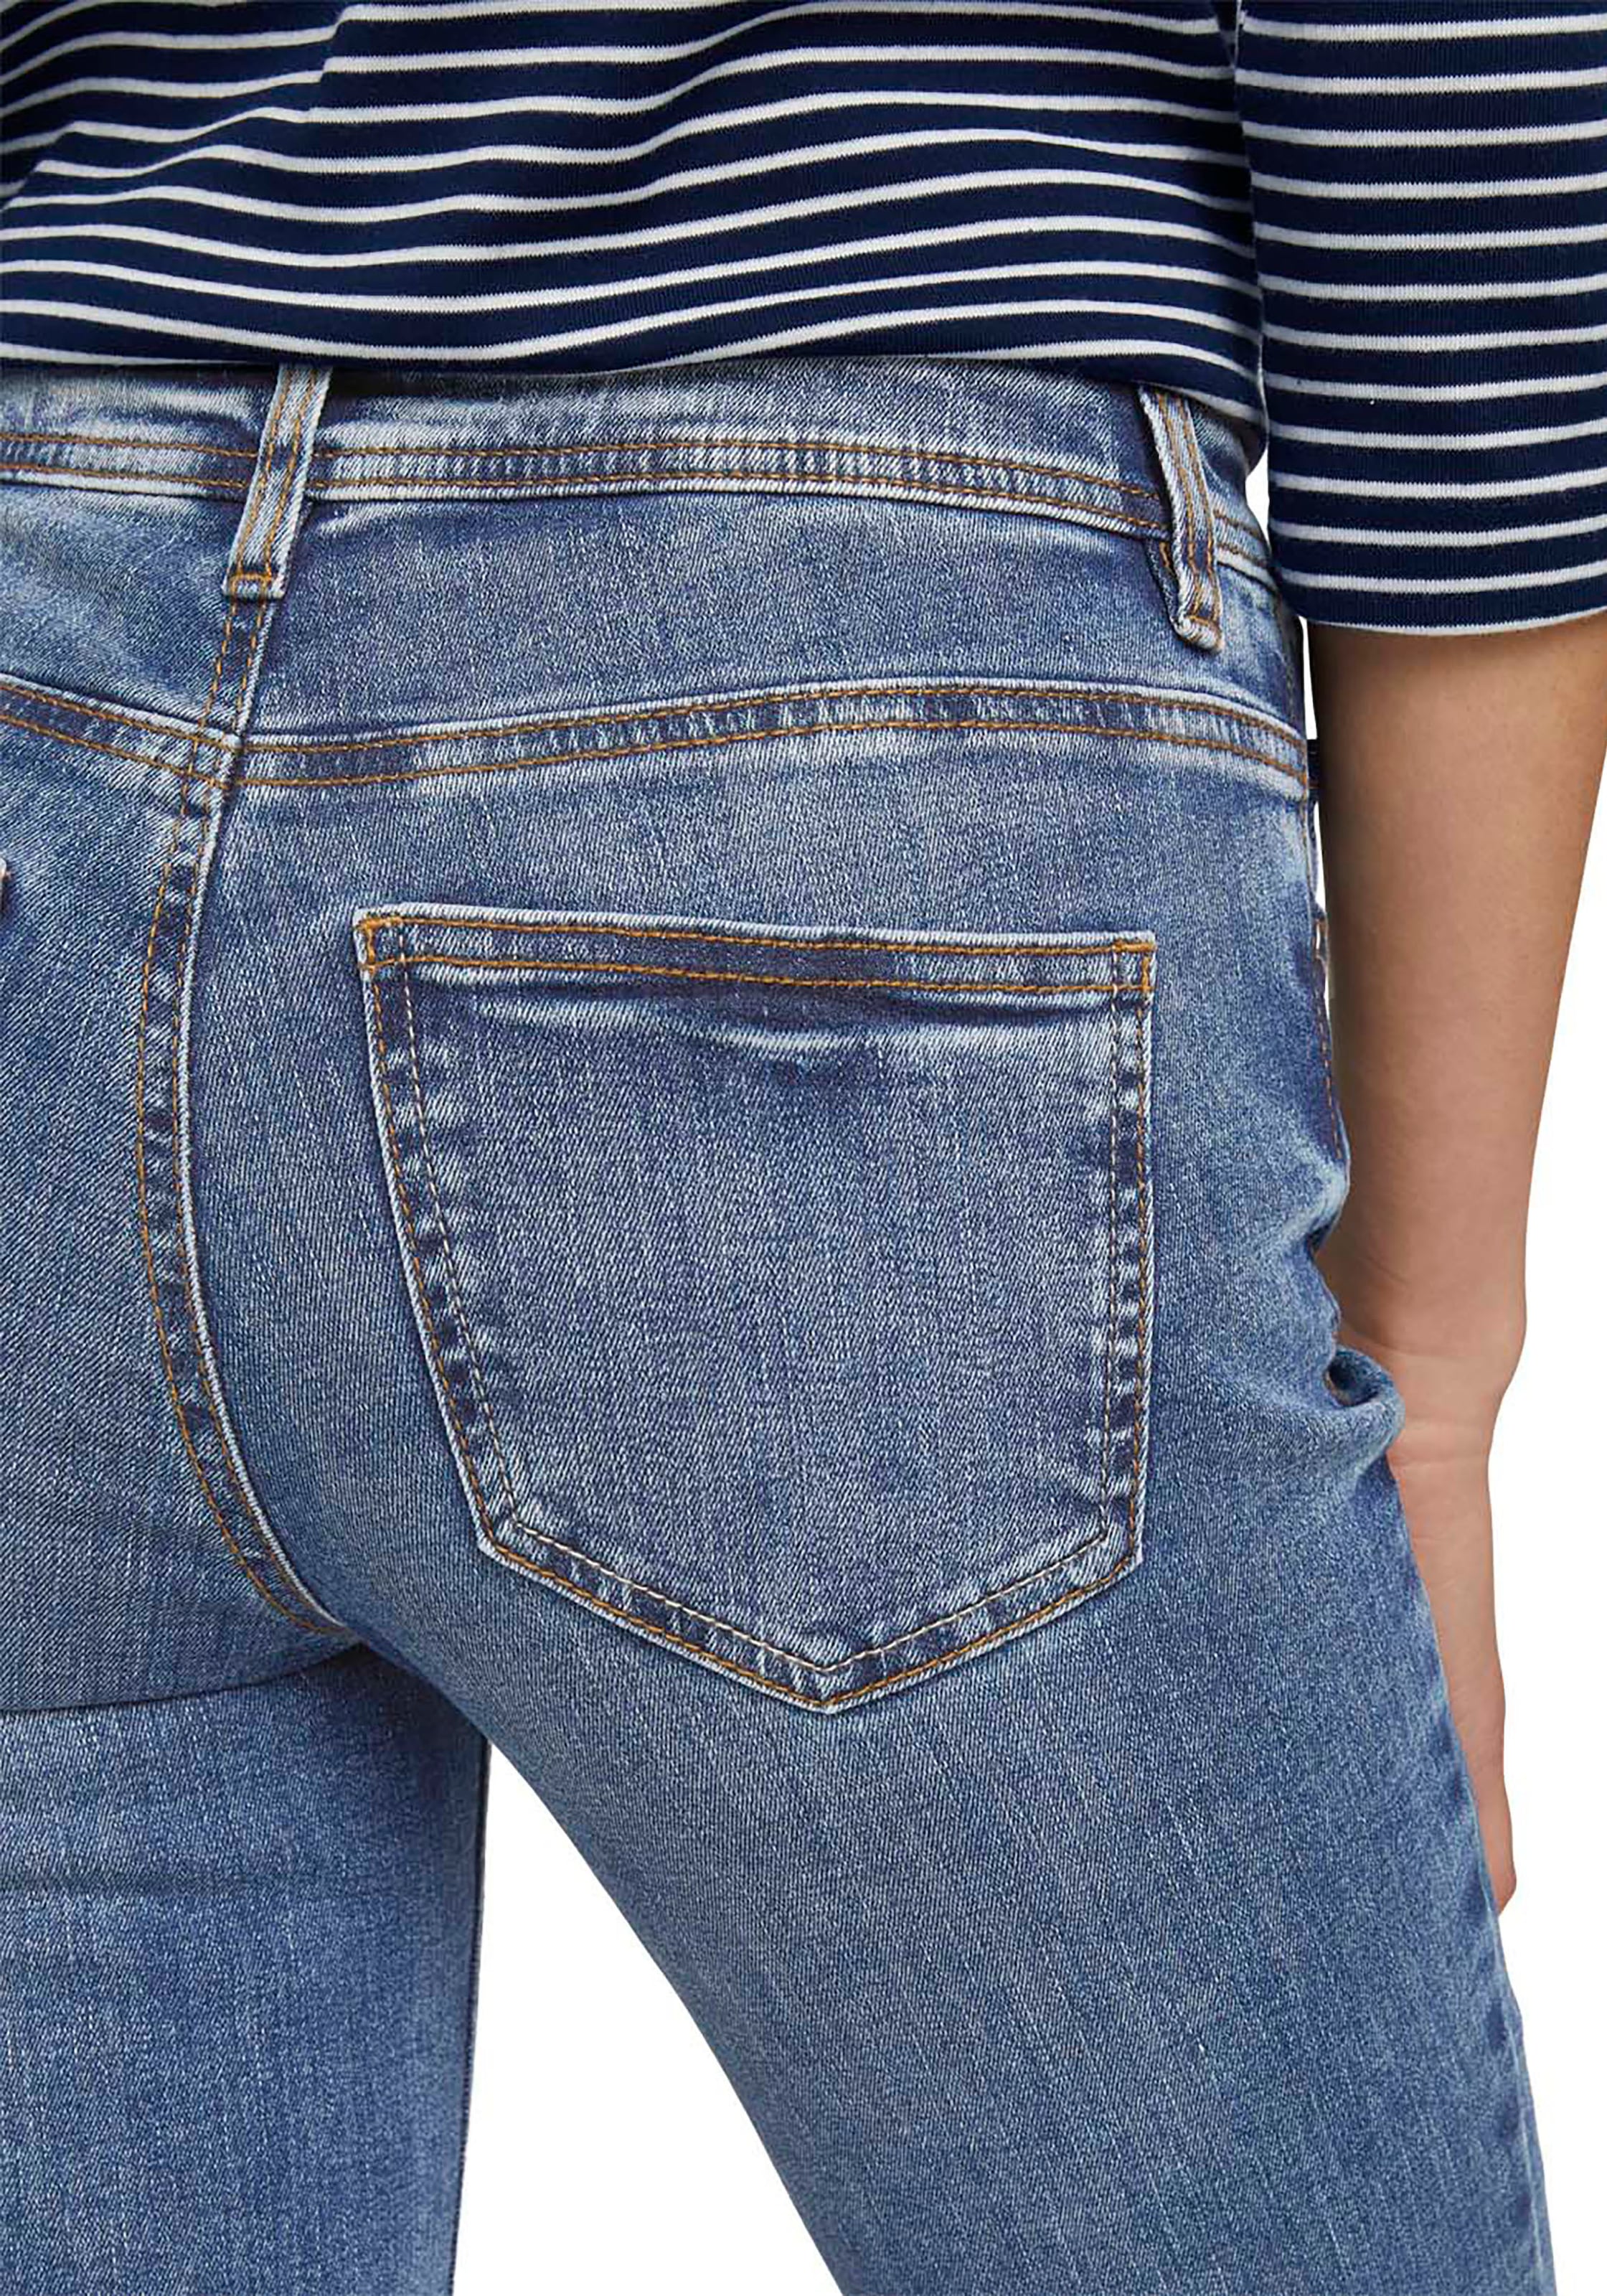 TOM TAILOR klassischen Straight-Jeans, Design im ♕ bei